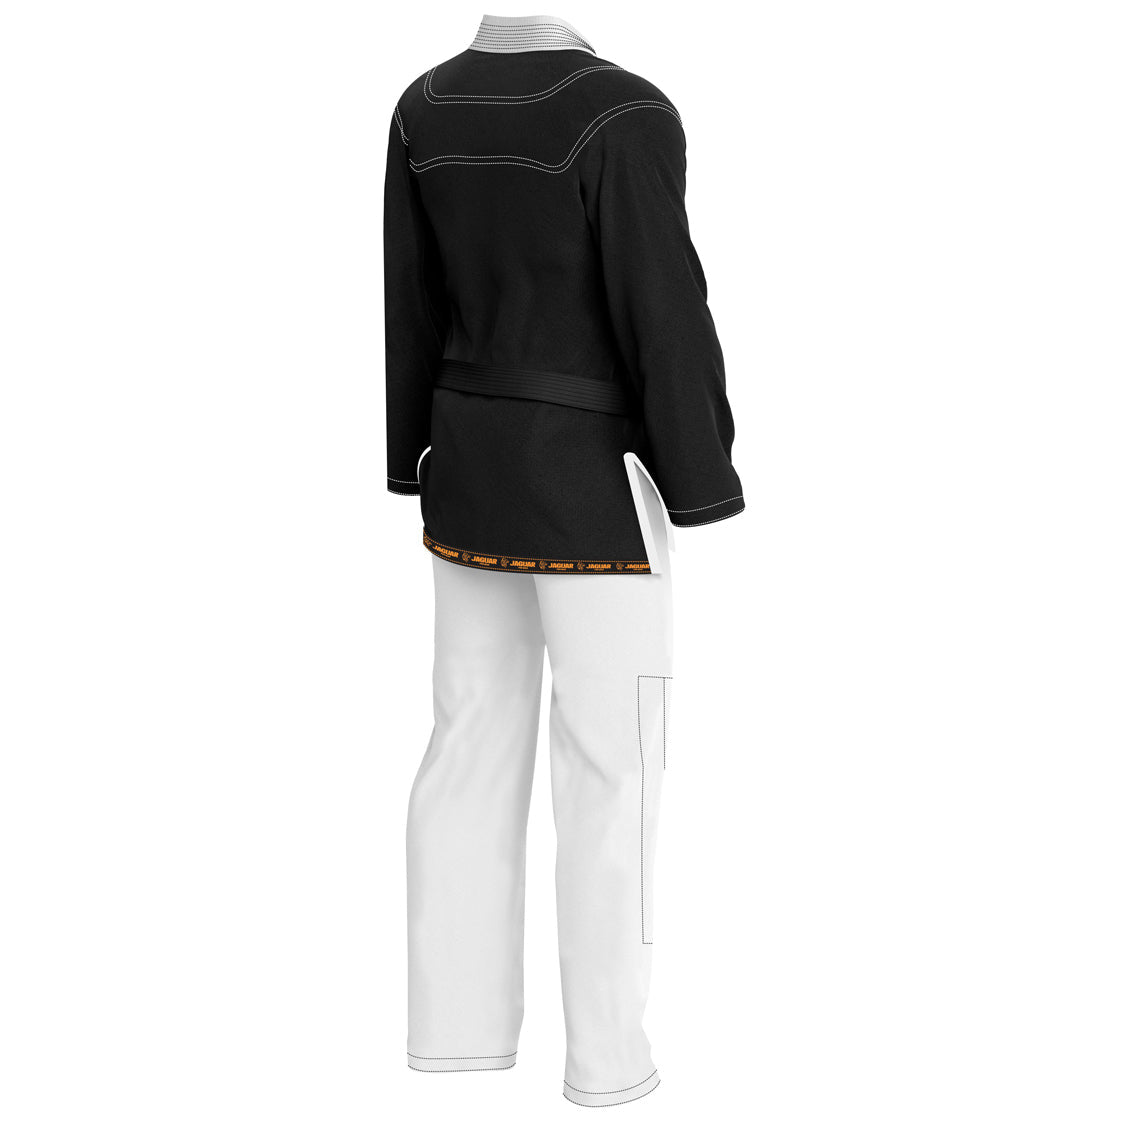 Black shirt white trouser